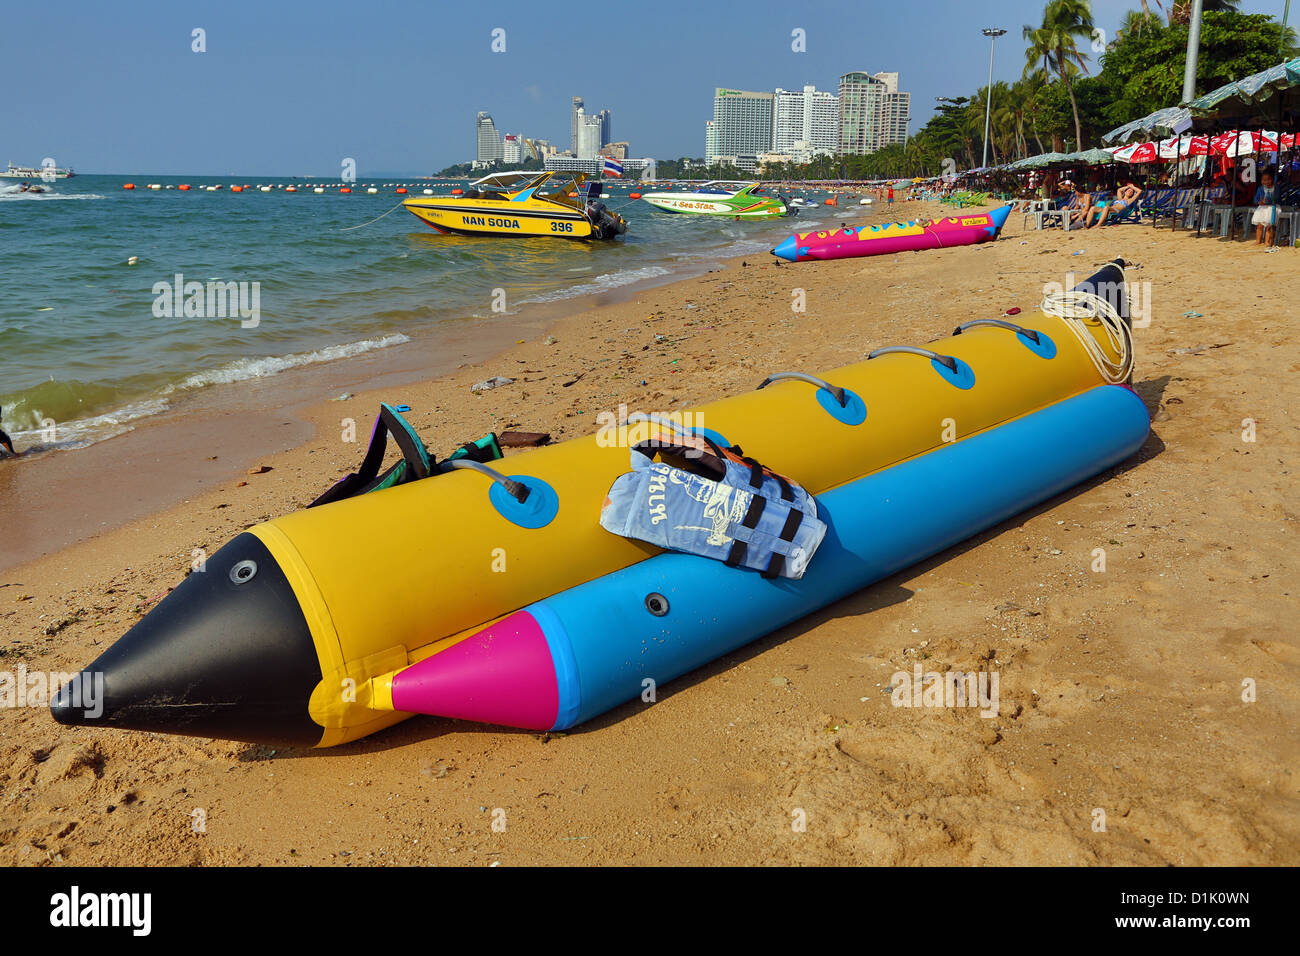 Strand-Szene mit einem aufblasbaren Banana-Boat auf der Strandpromenade von Pattaya, Thailand Stockfoto